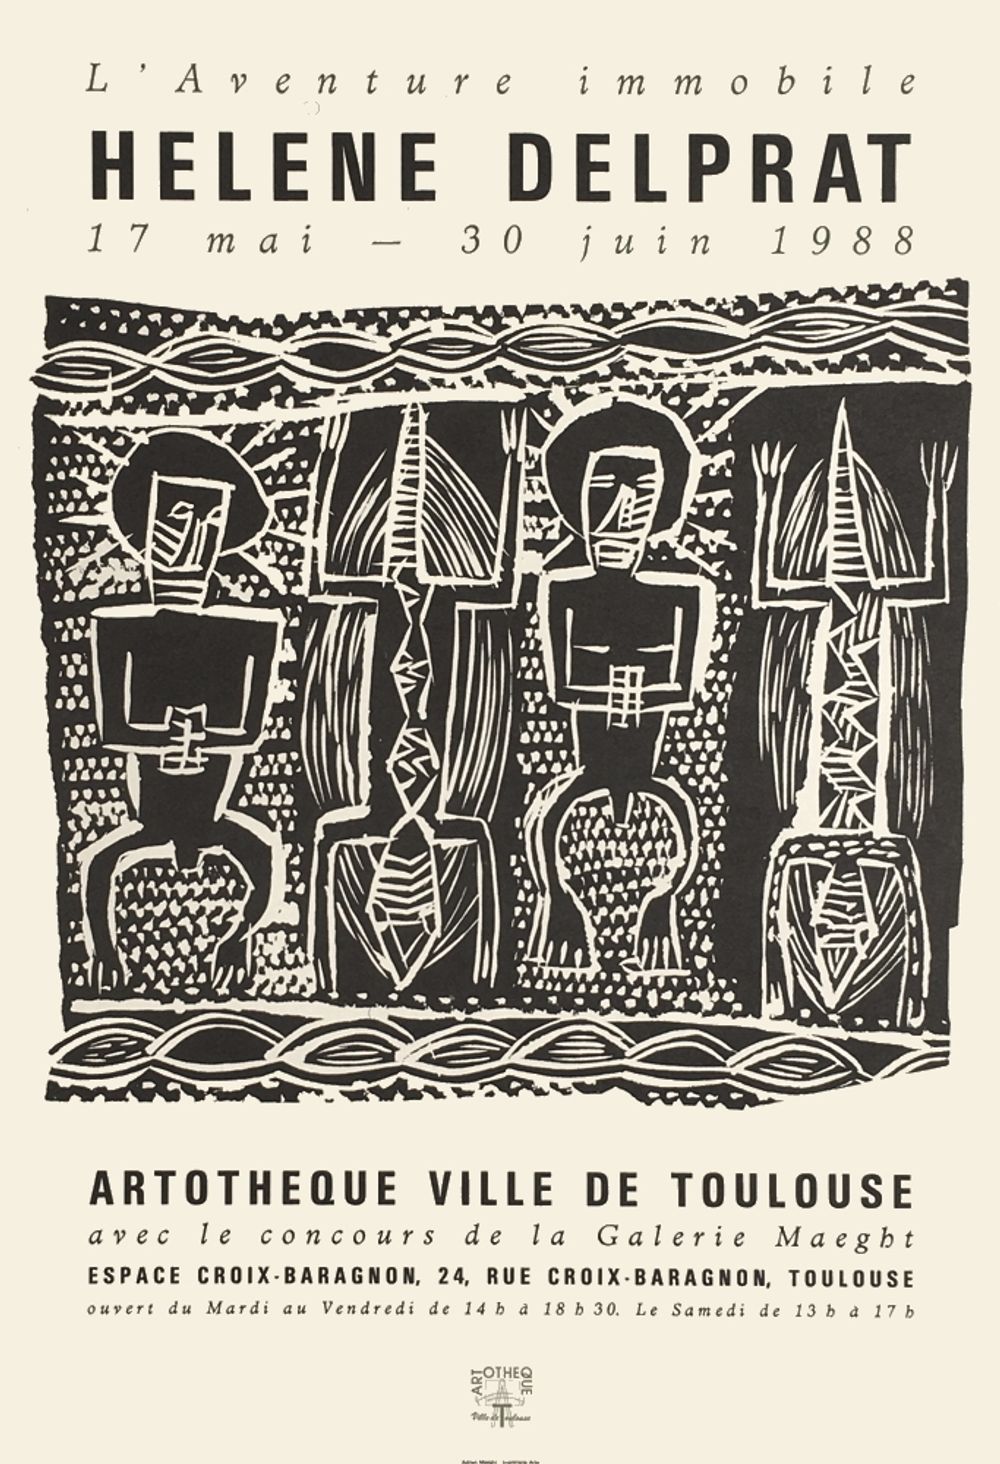 Expo 88 - Artothèque de Toulouse